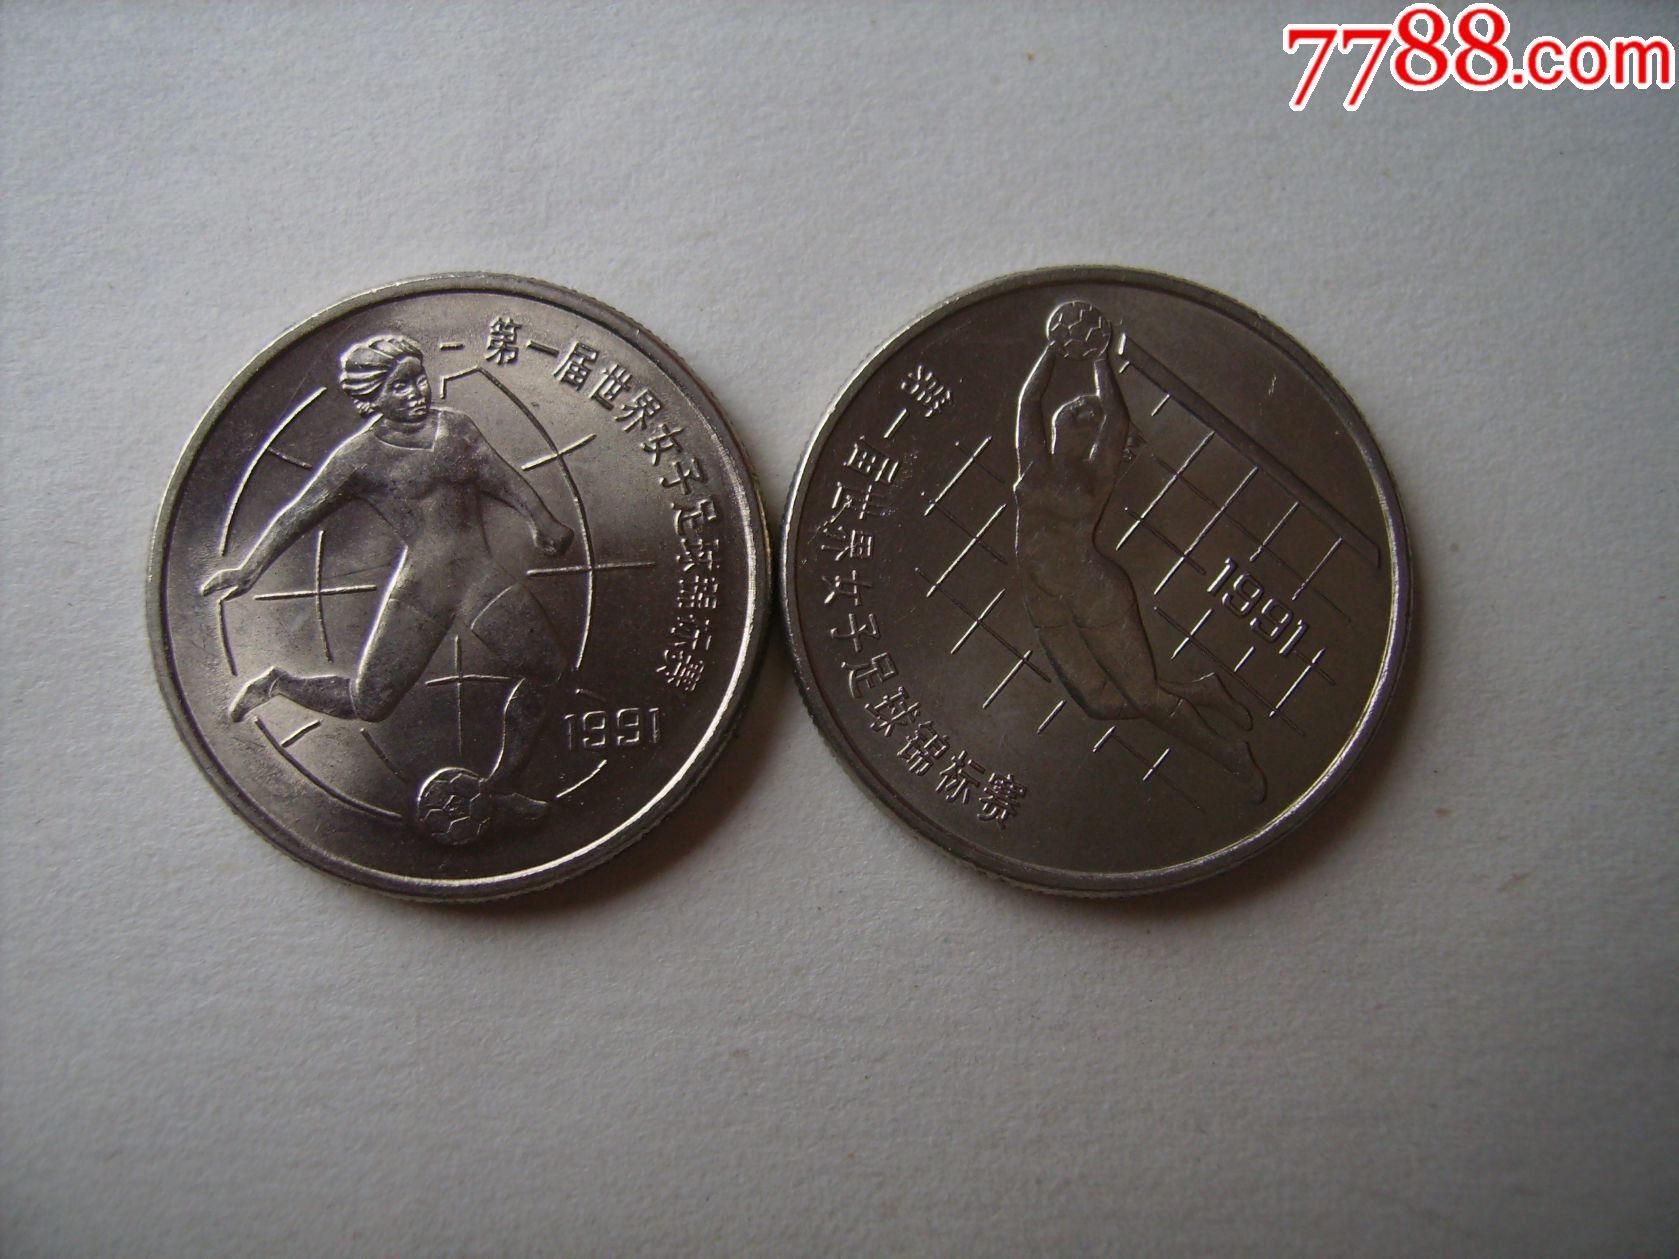 第一届世界女子足球锦标赛纪念币(二枚一套.美